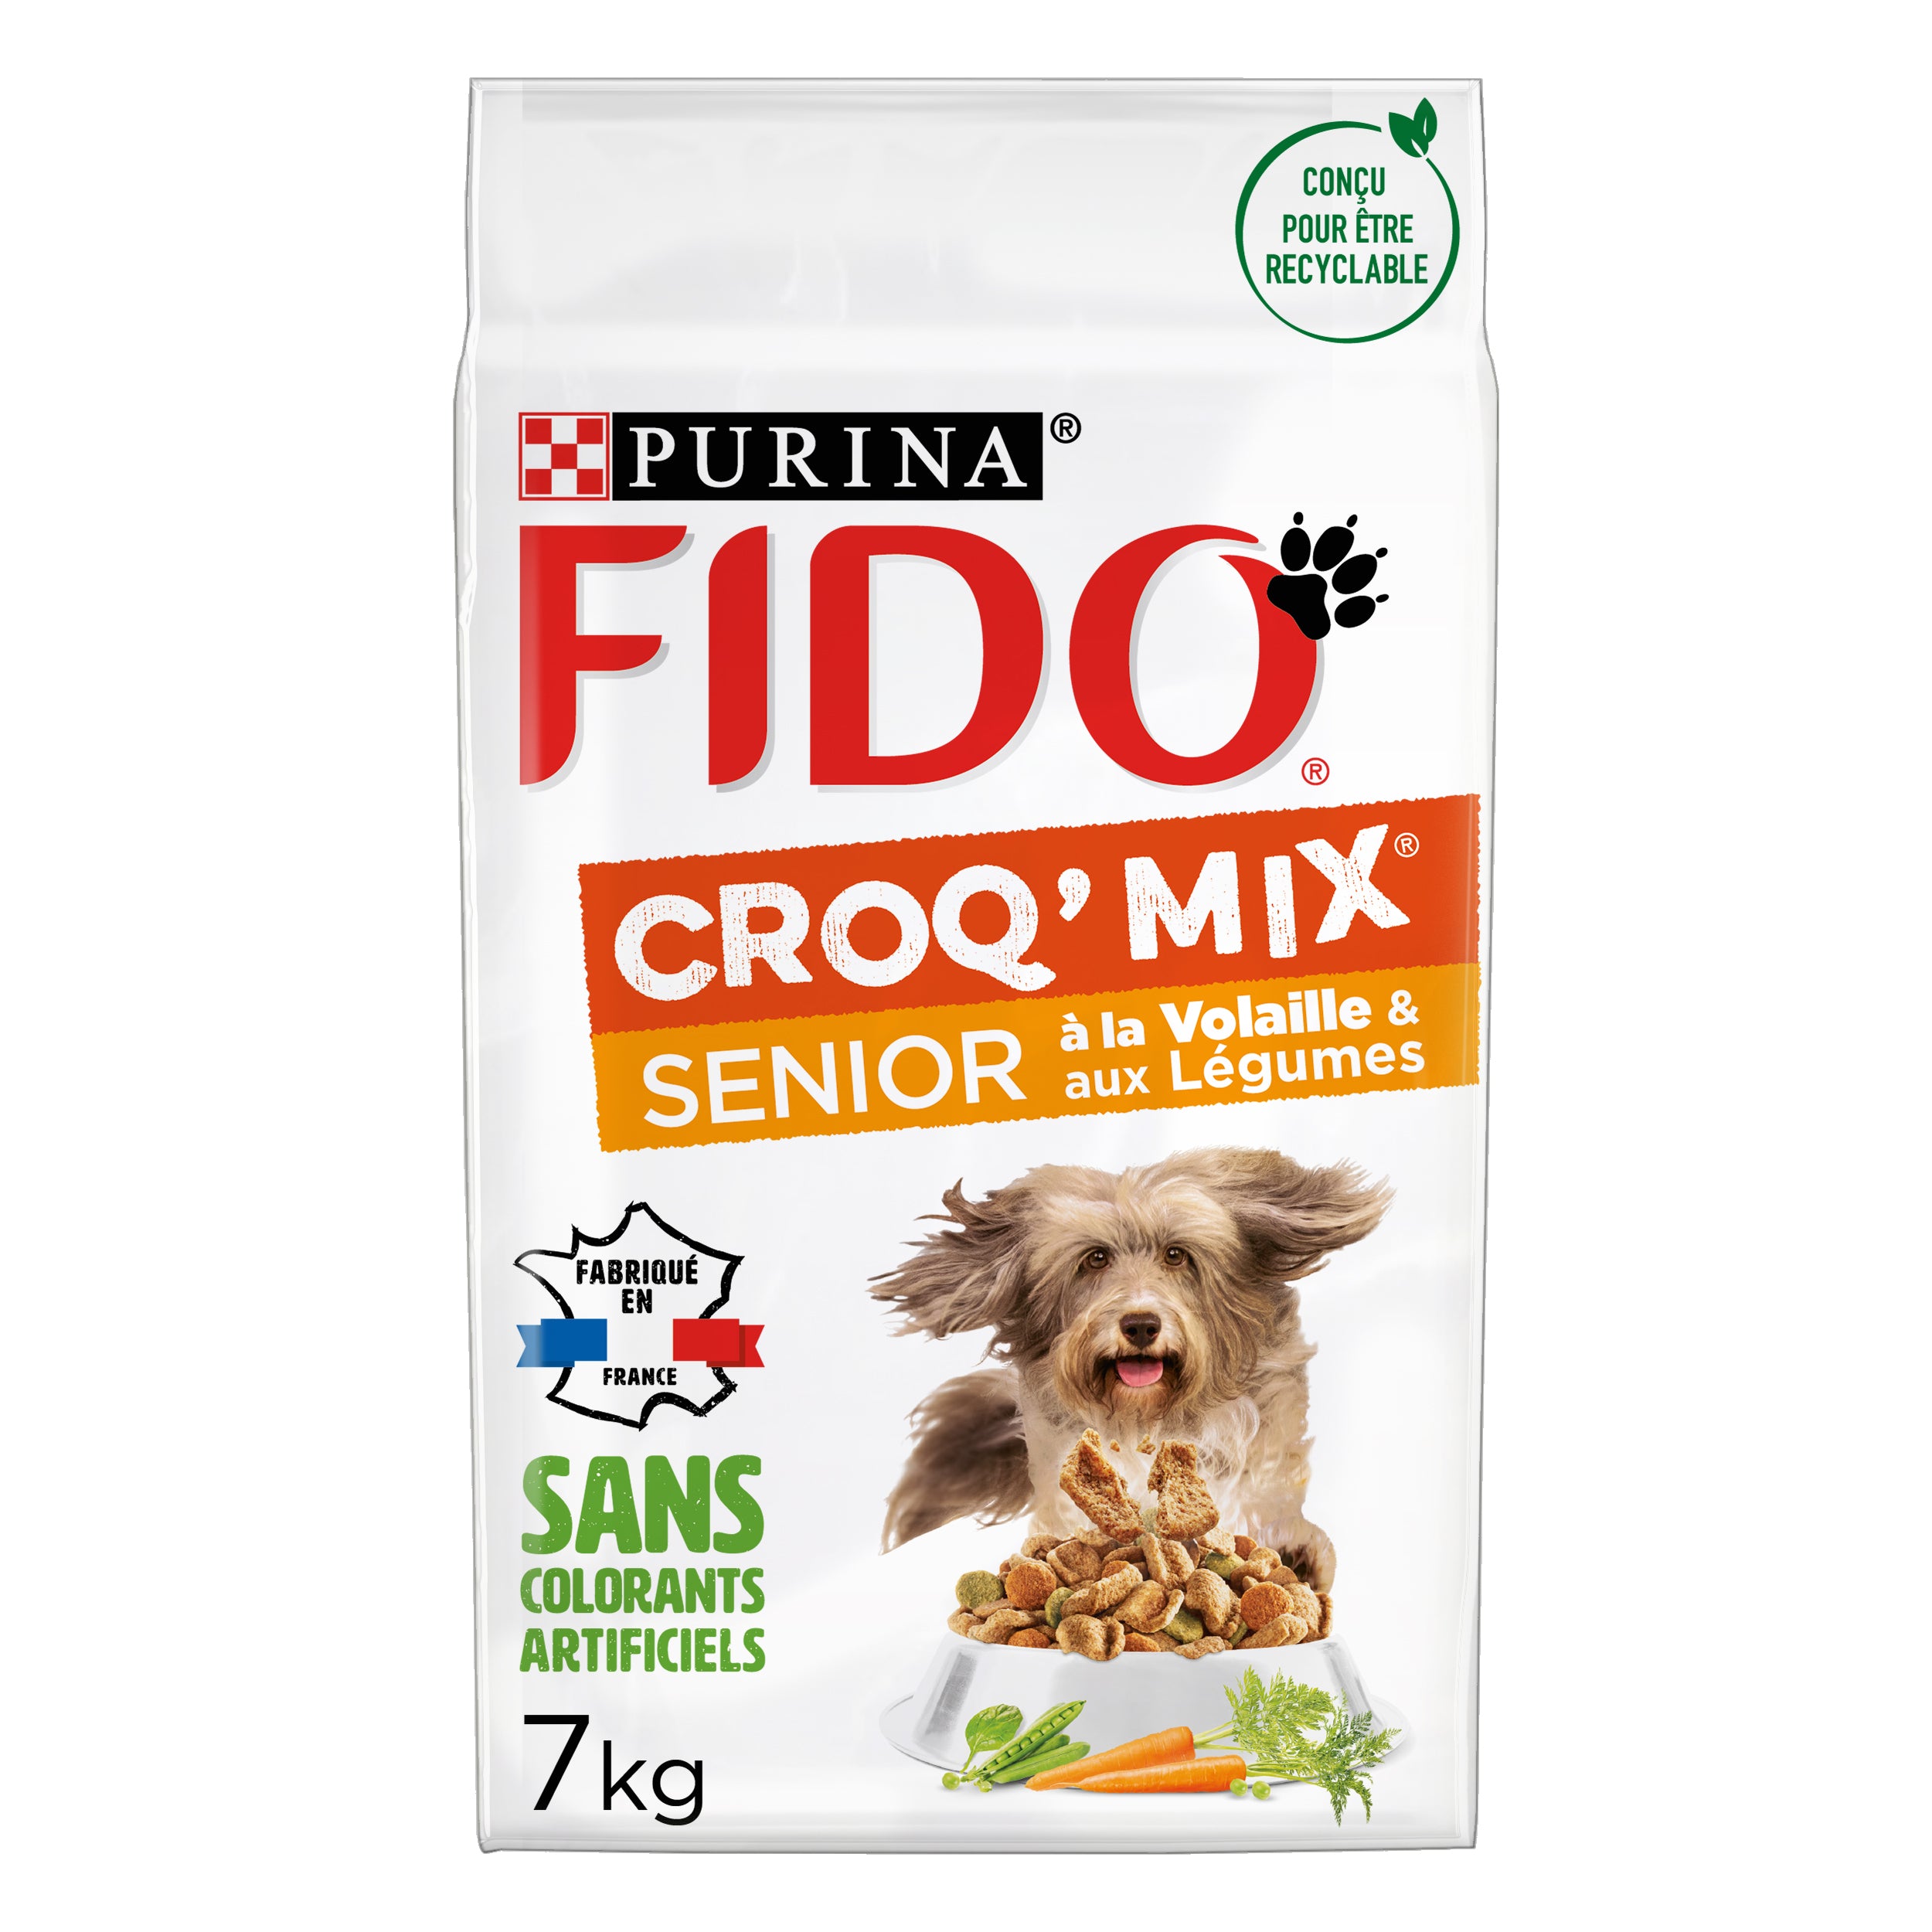 Croquette chien FIDO® CROQ’ MIX® Senior À la Volaille & aux Légumes de Purina